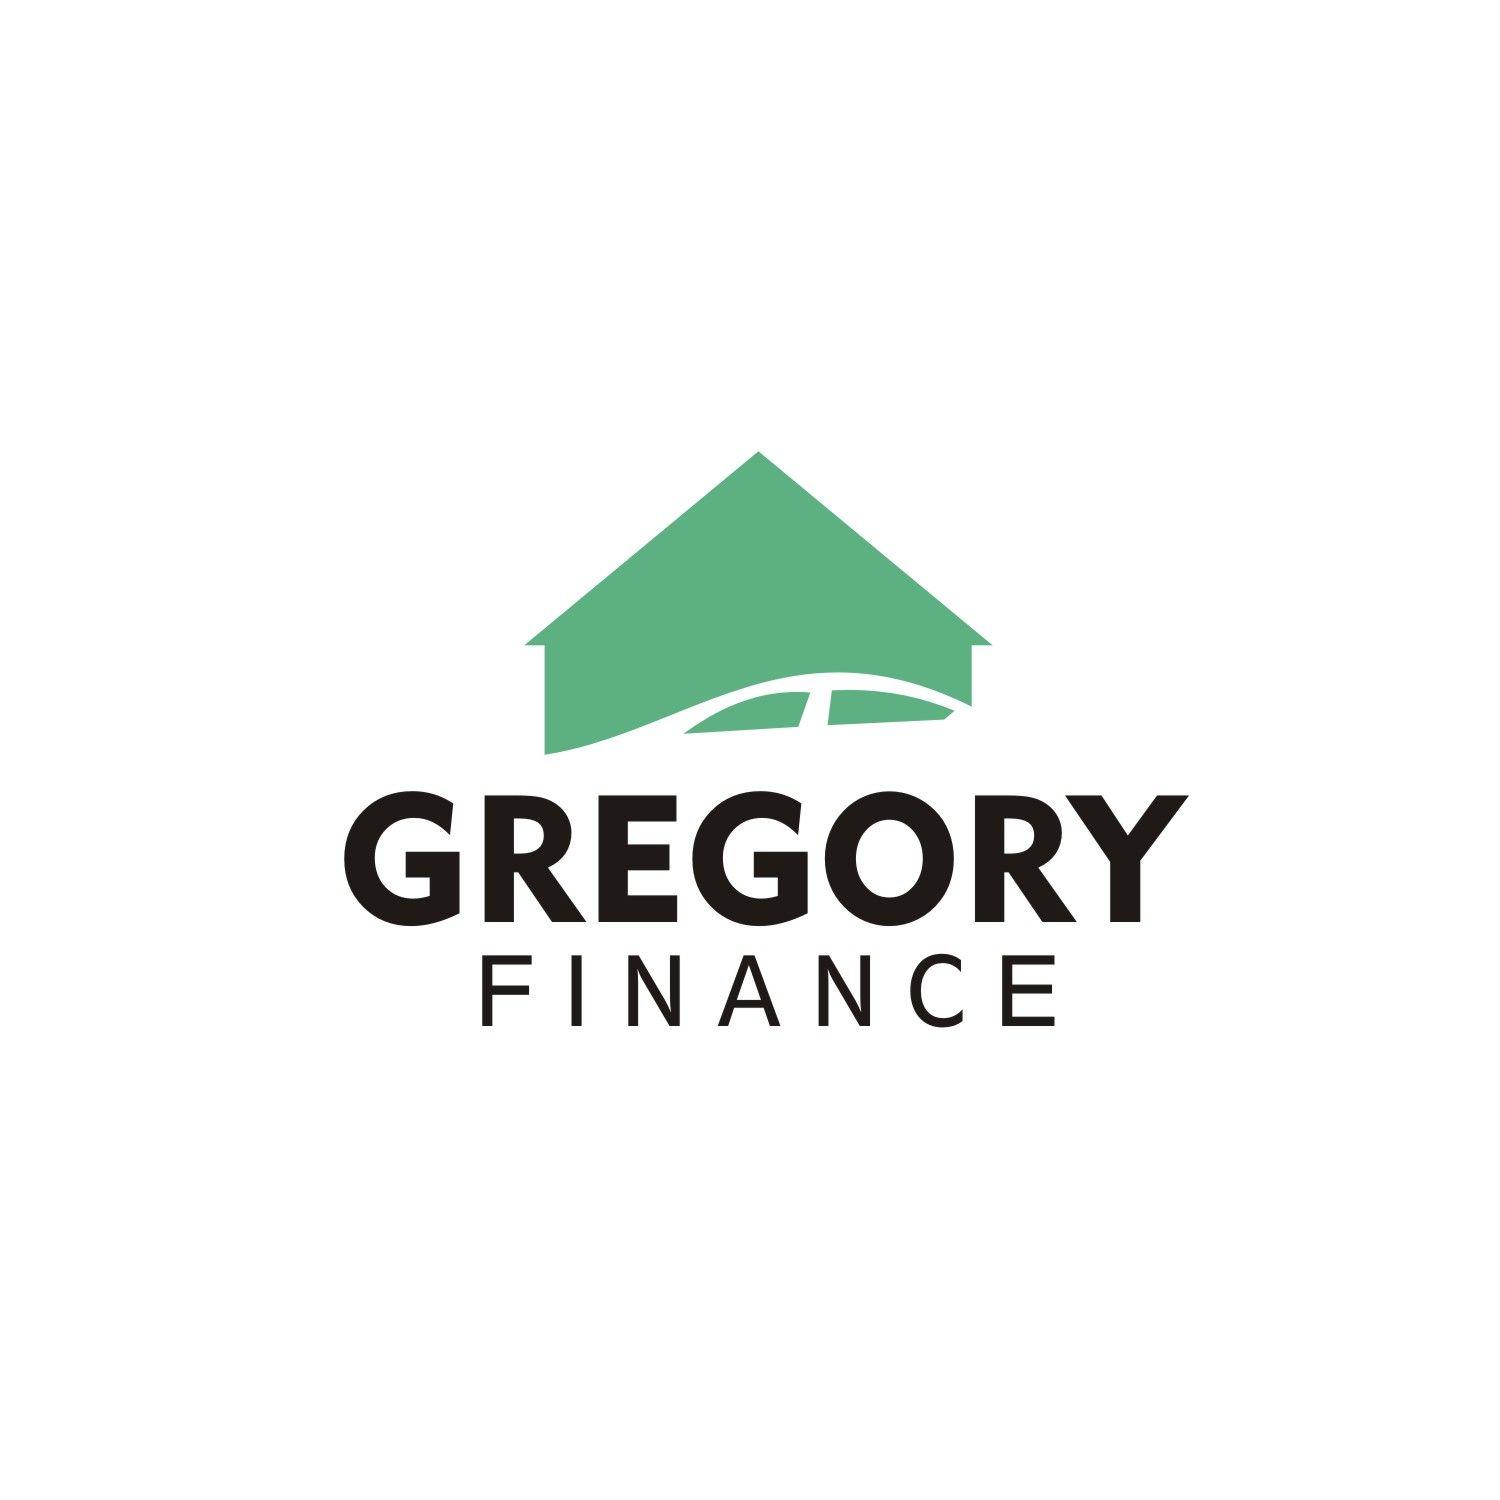 Gregory Logo - Elegant, Modern, Finance Logo Design for Gregory FInance